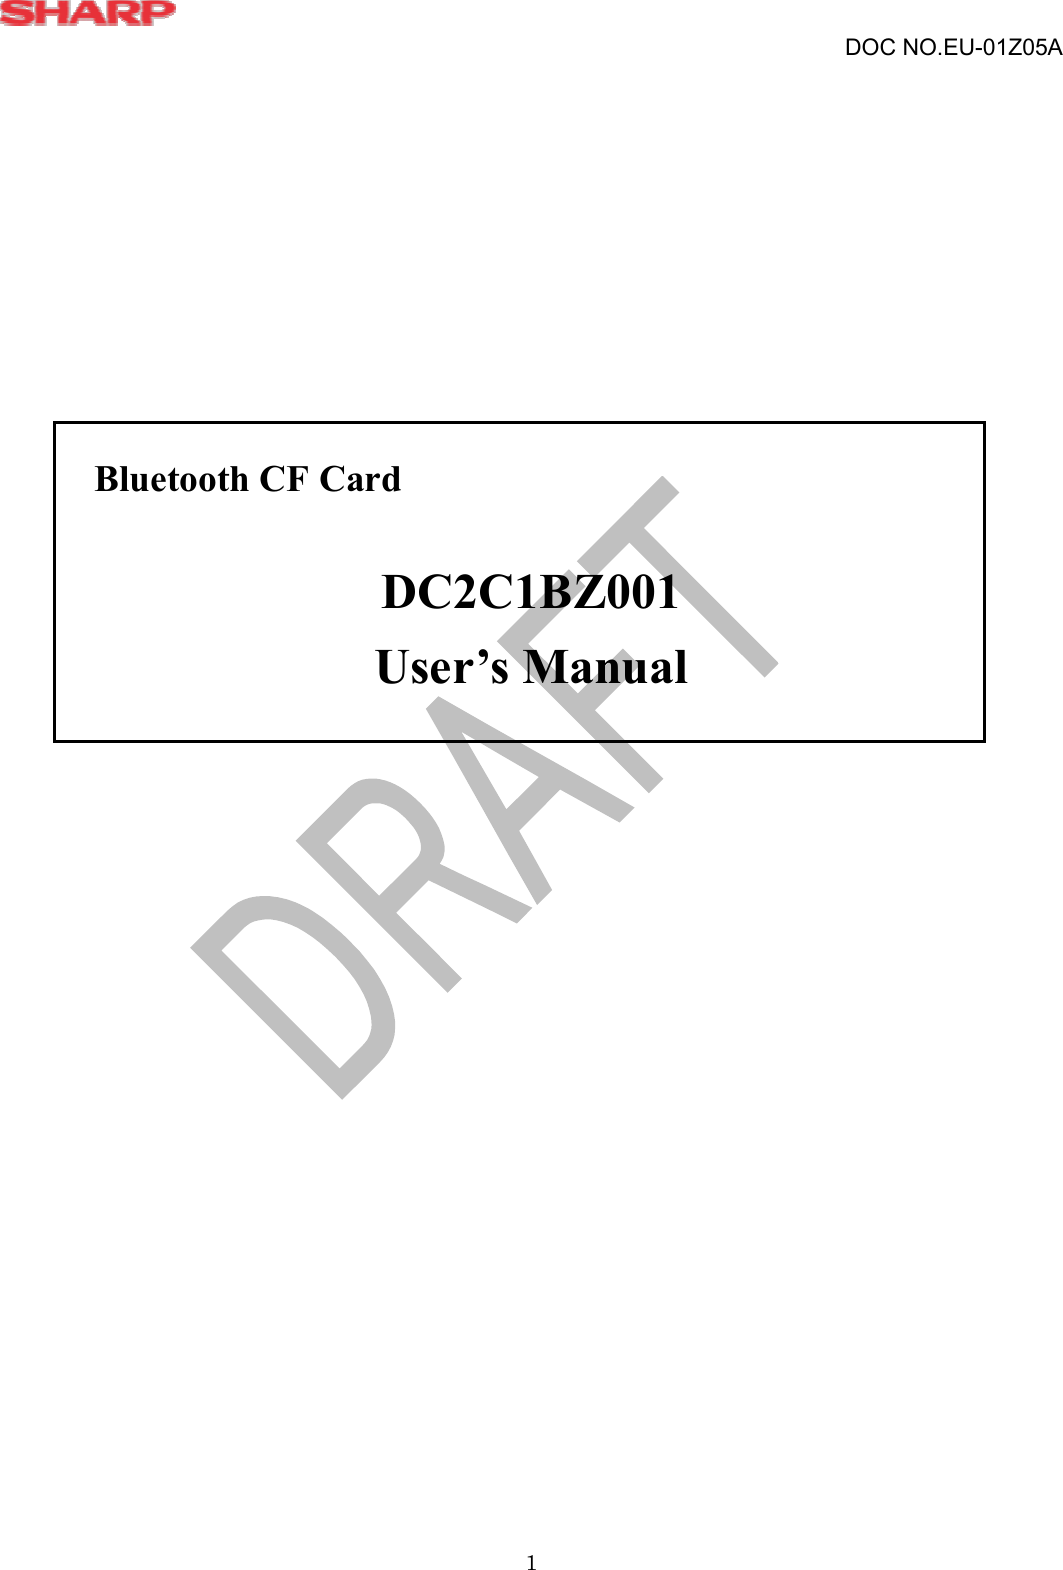  1 DOC NO.EU-01Z05A                Bluetooth CF Card  DC2C1BZ001 User’s Manual    